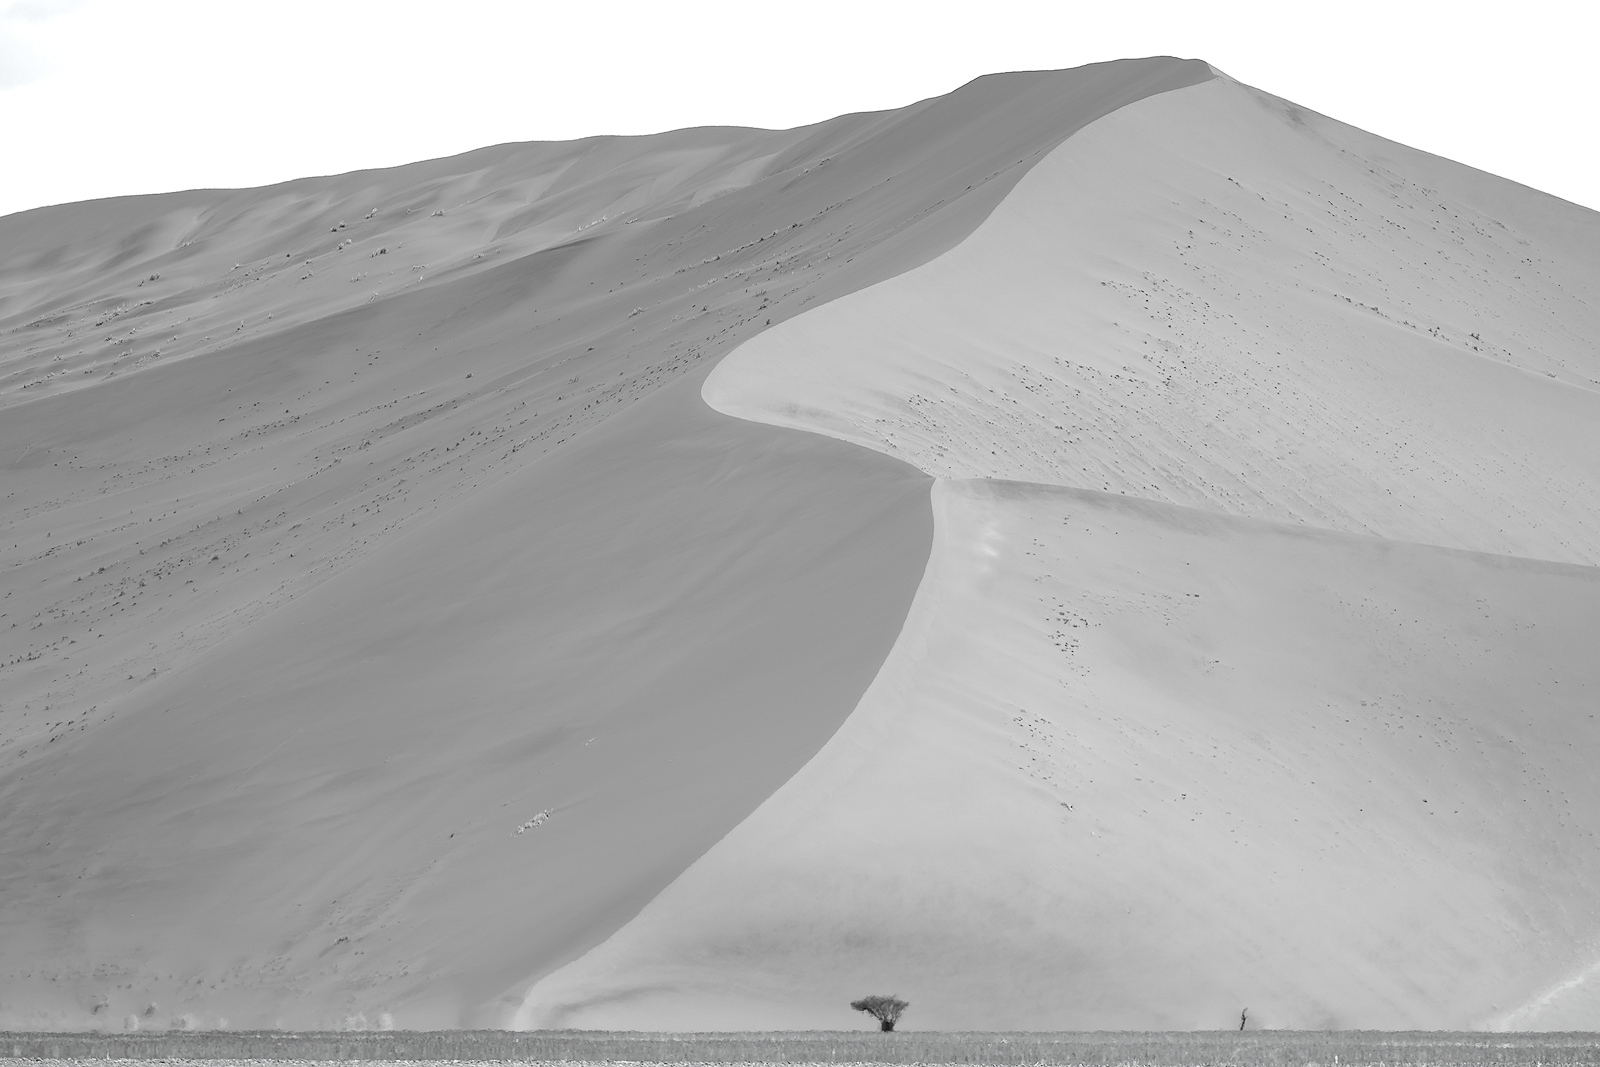 Dunes. The surreal landscape